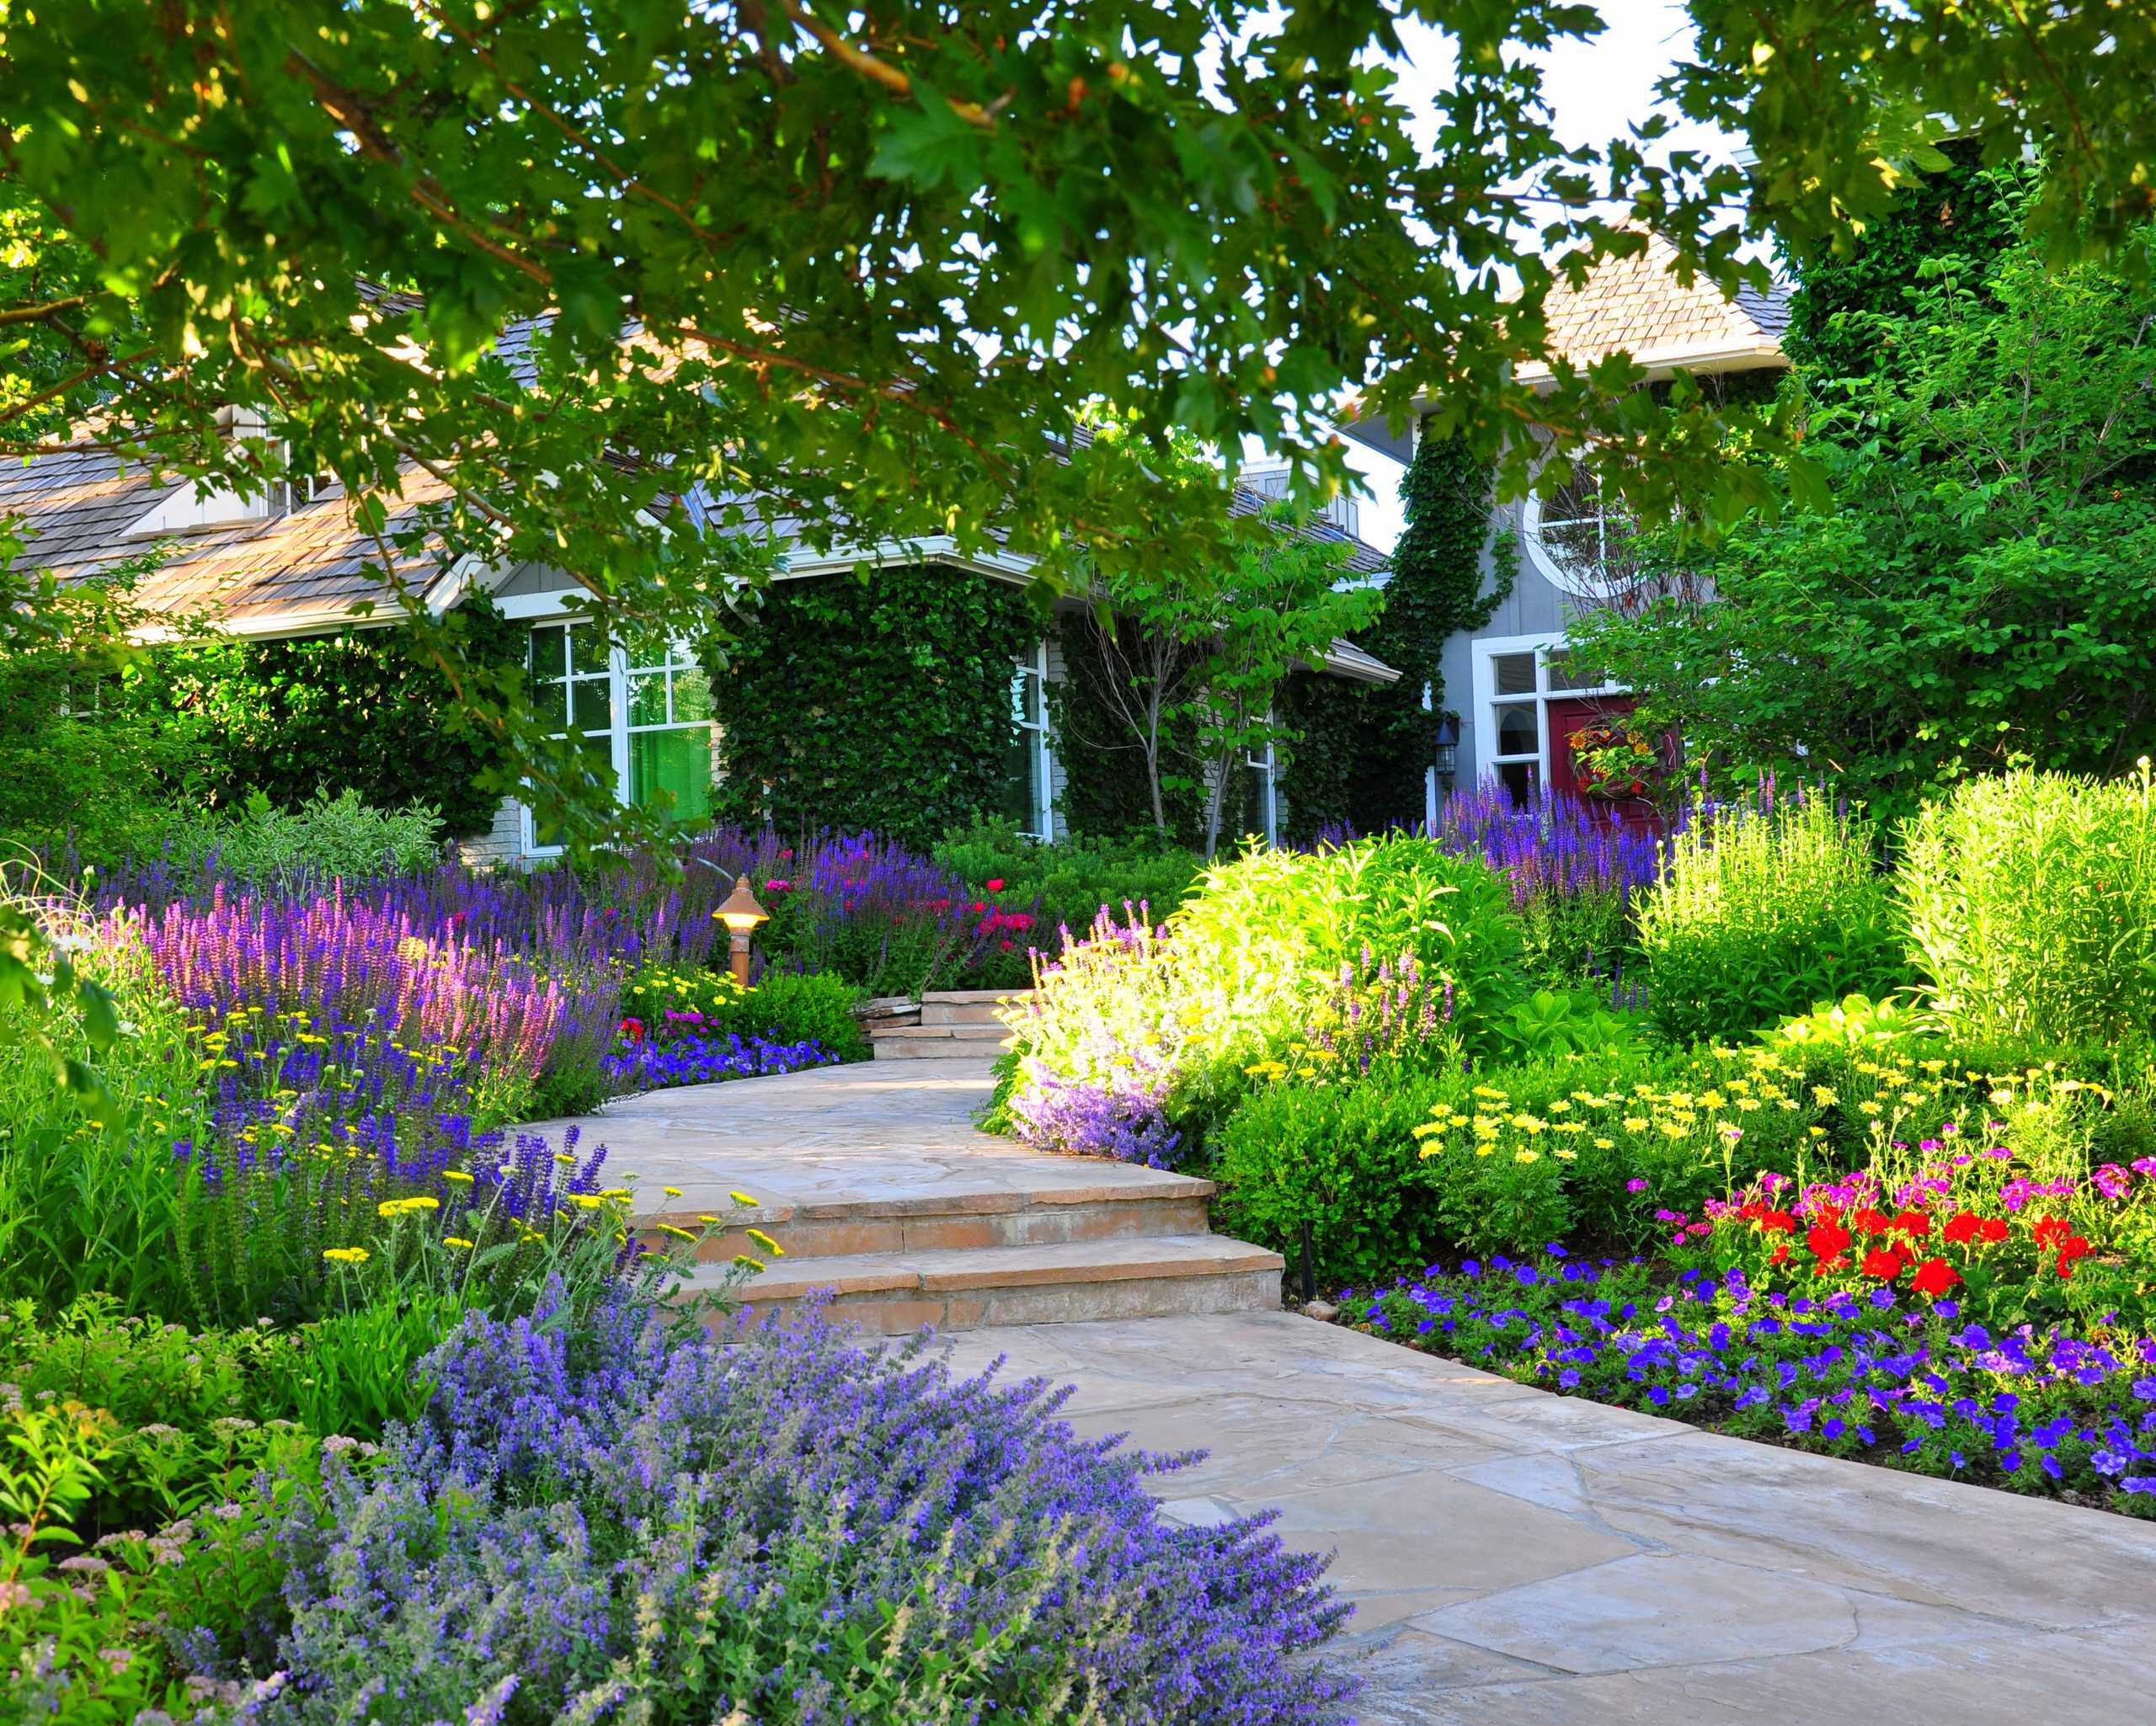 Около дома был сад. Кэрри Престон ландшафтный дизайнер. Приусадебные сады Англии дорожки. Сад в пейзажном стиле. Цветы в саду.